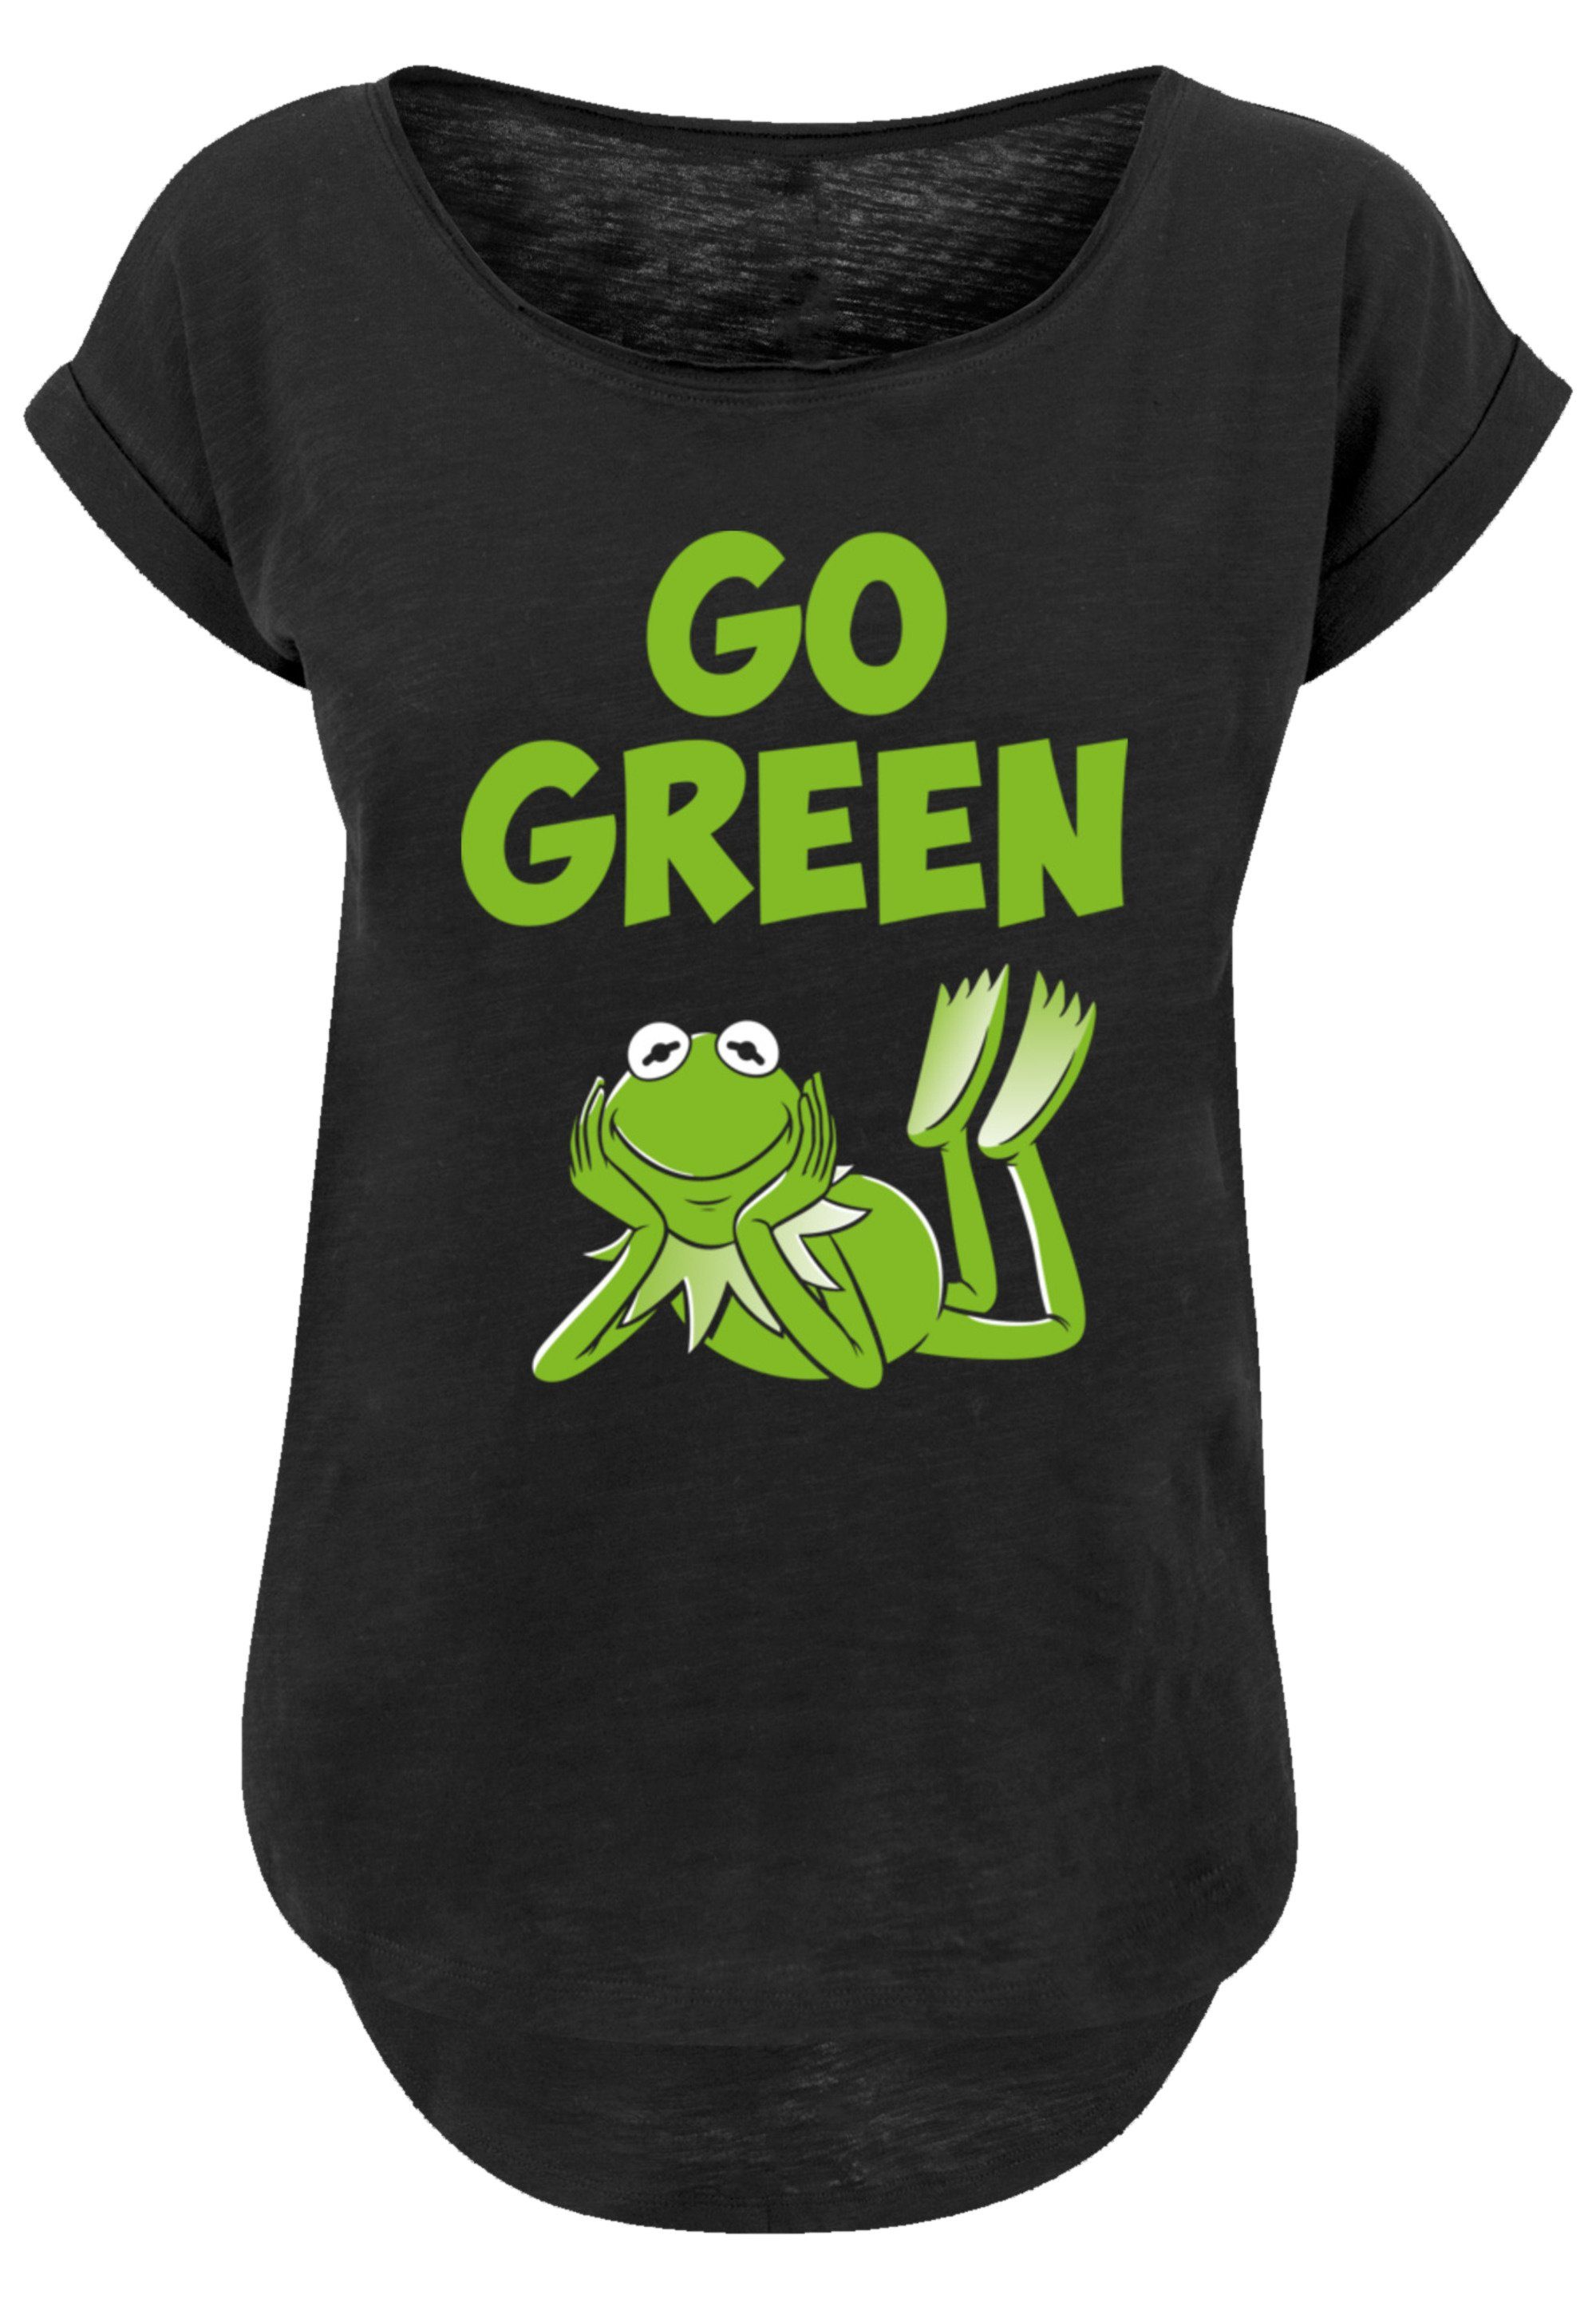 extra Disney Qualität, F4NT4STIC geschnittenes Premium Green Hinten Go Muppets Damen T-Shirt lang T-Shirt